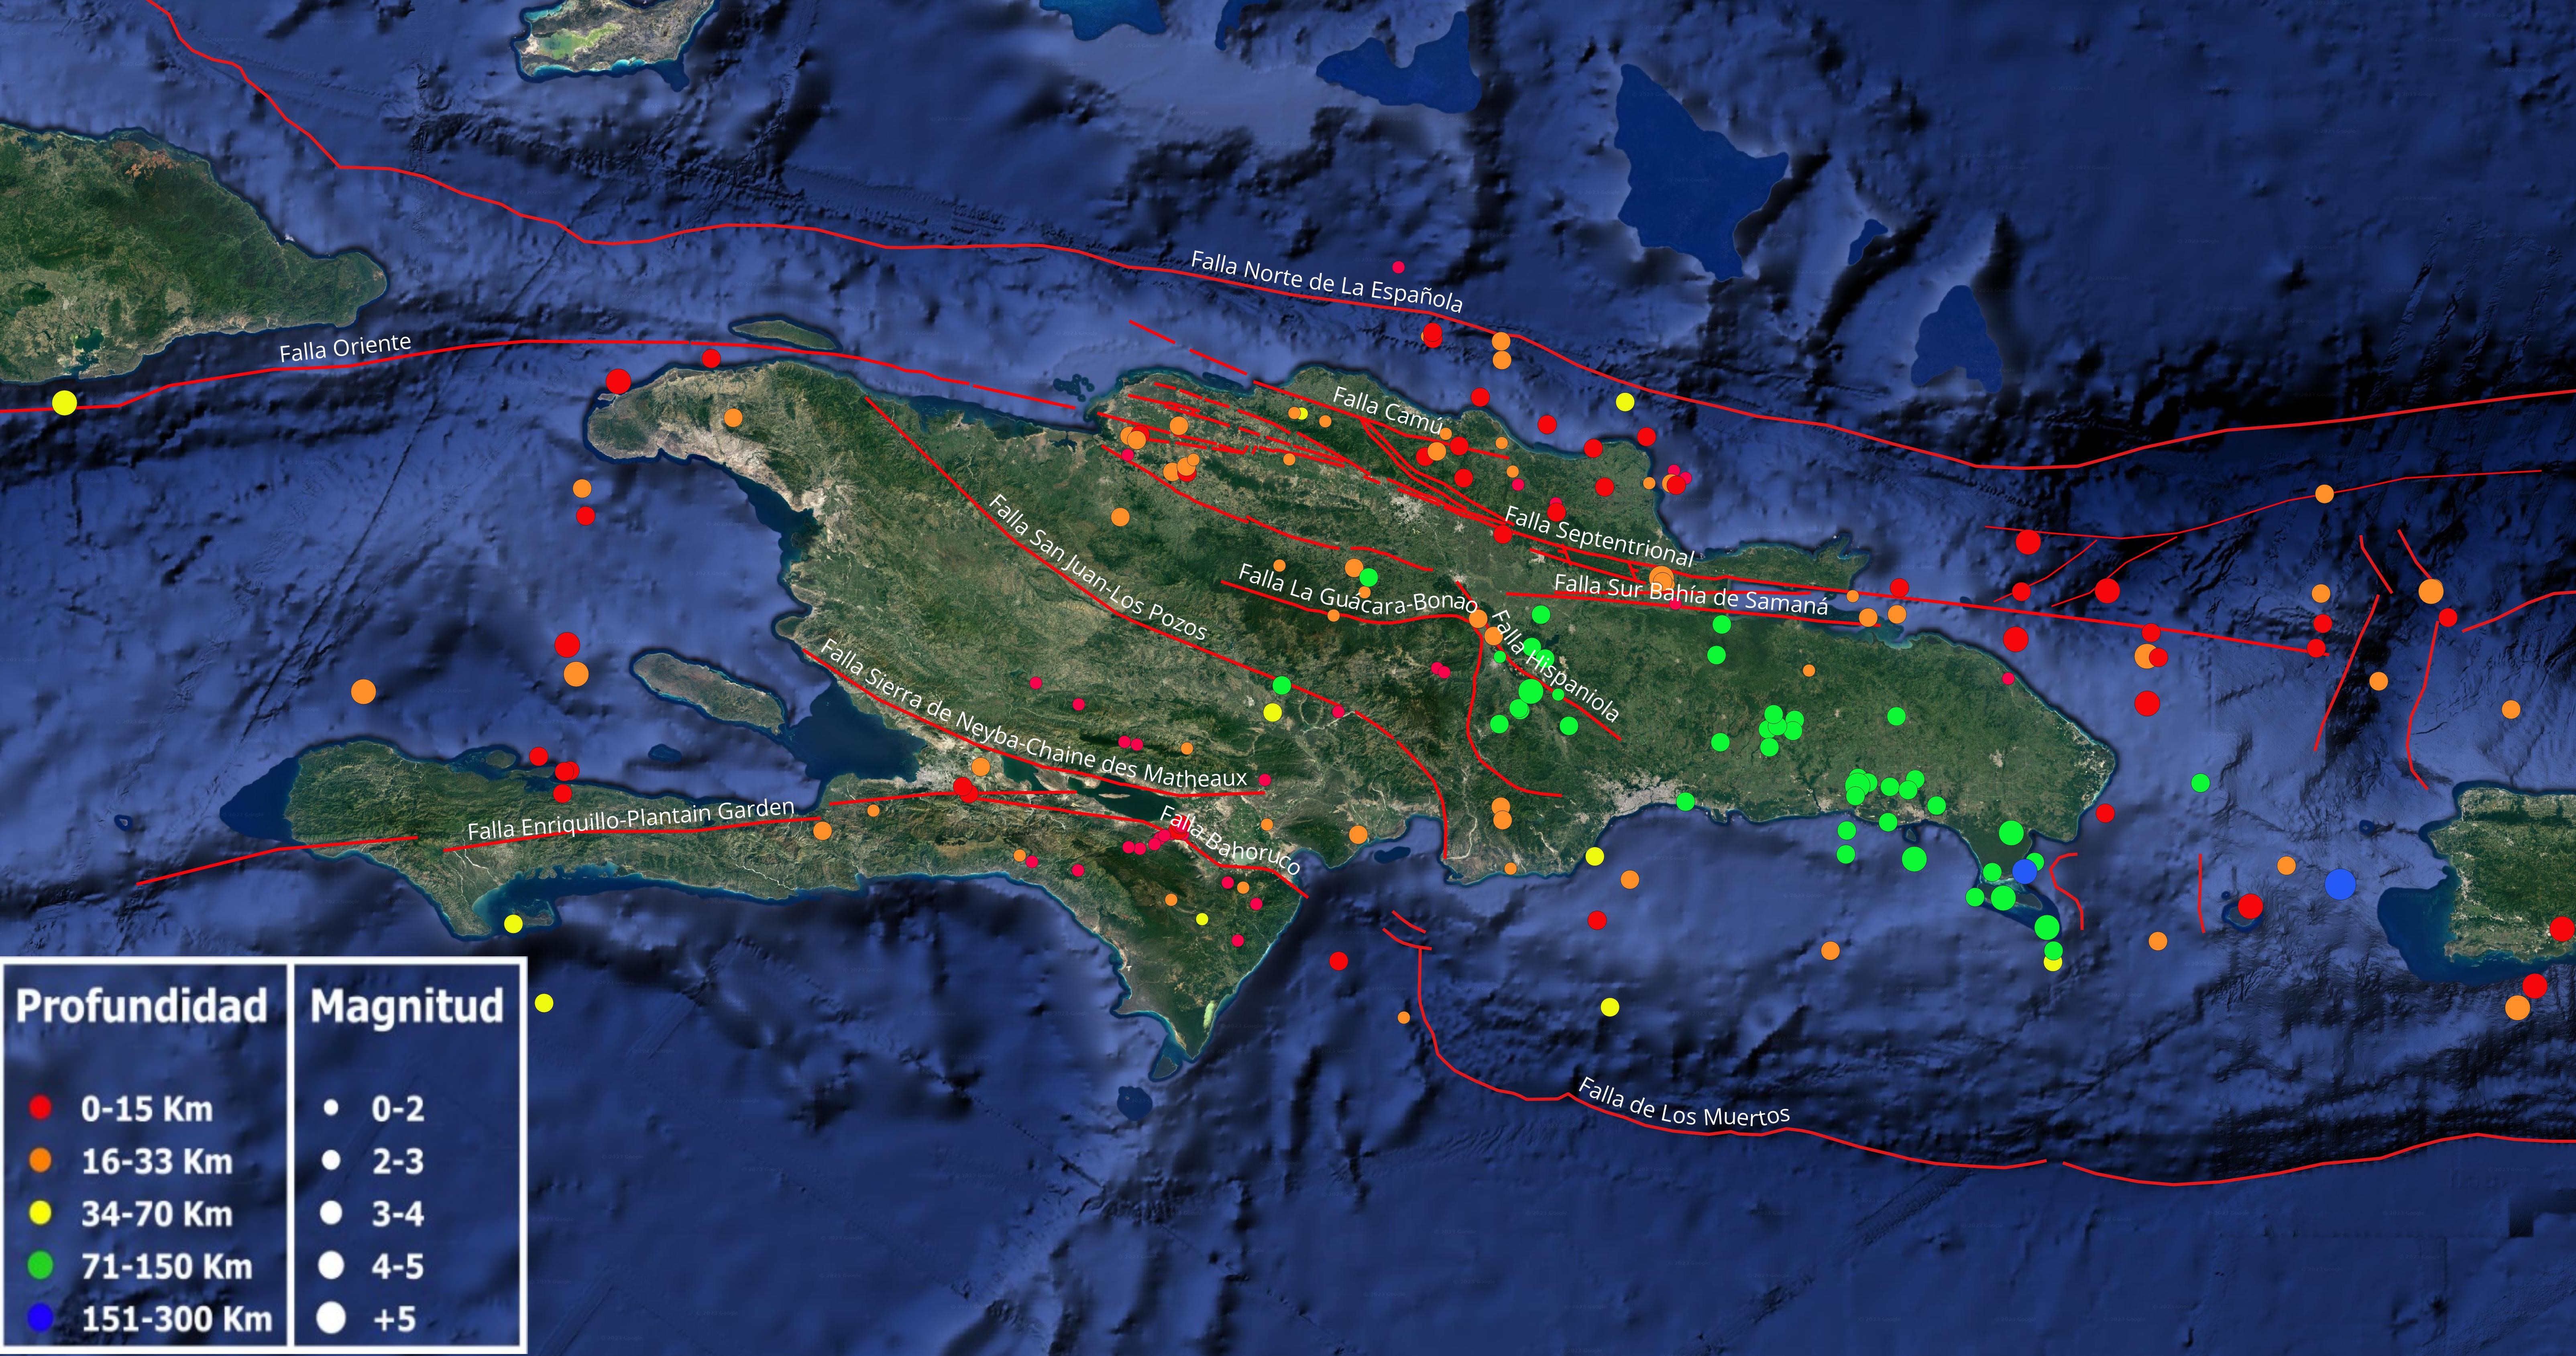 Imagen N° 1 cortesía de Google earth mostrando distribución de la sismicidad en el mes de abril 2024 en la Isla de La Española y alrededores. El recuadro en la esquina inferior izquierda es indicativo de la leyenda. Los lineamientos en color rojo muestran las principales fallas geológicas compiladas presuntamente activas